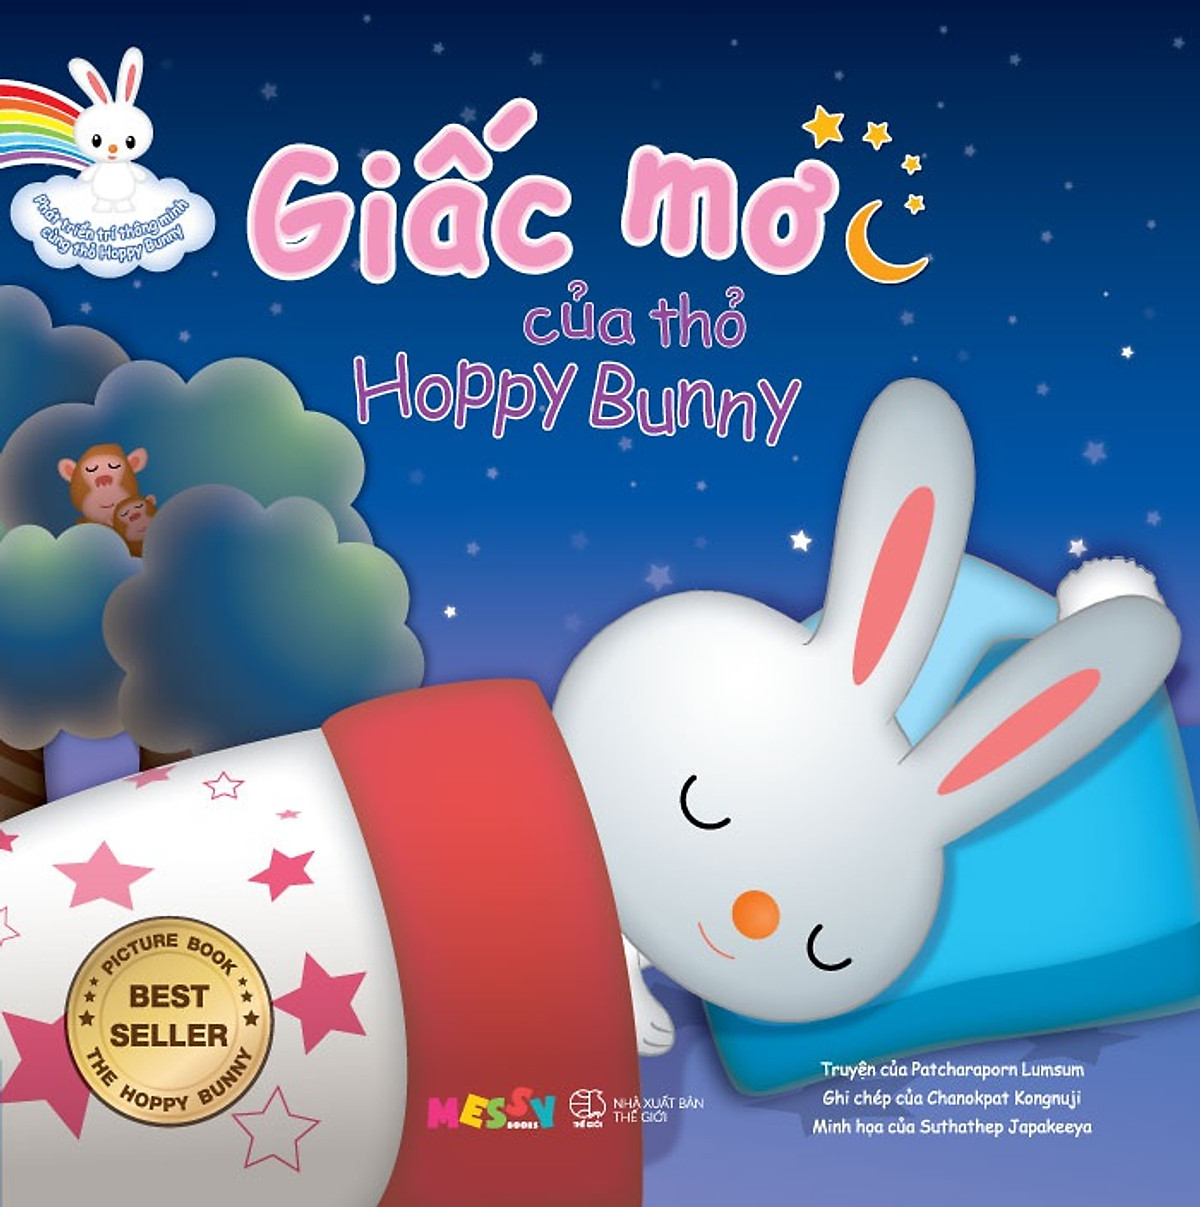 Phát Triển Trí Thông Minh Cùng Thỏ Hoppy Bunny - Giấc Mơ Của Thỏ Hoppy Bunny